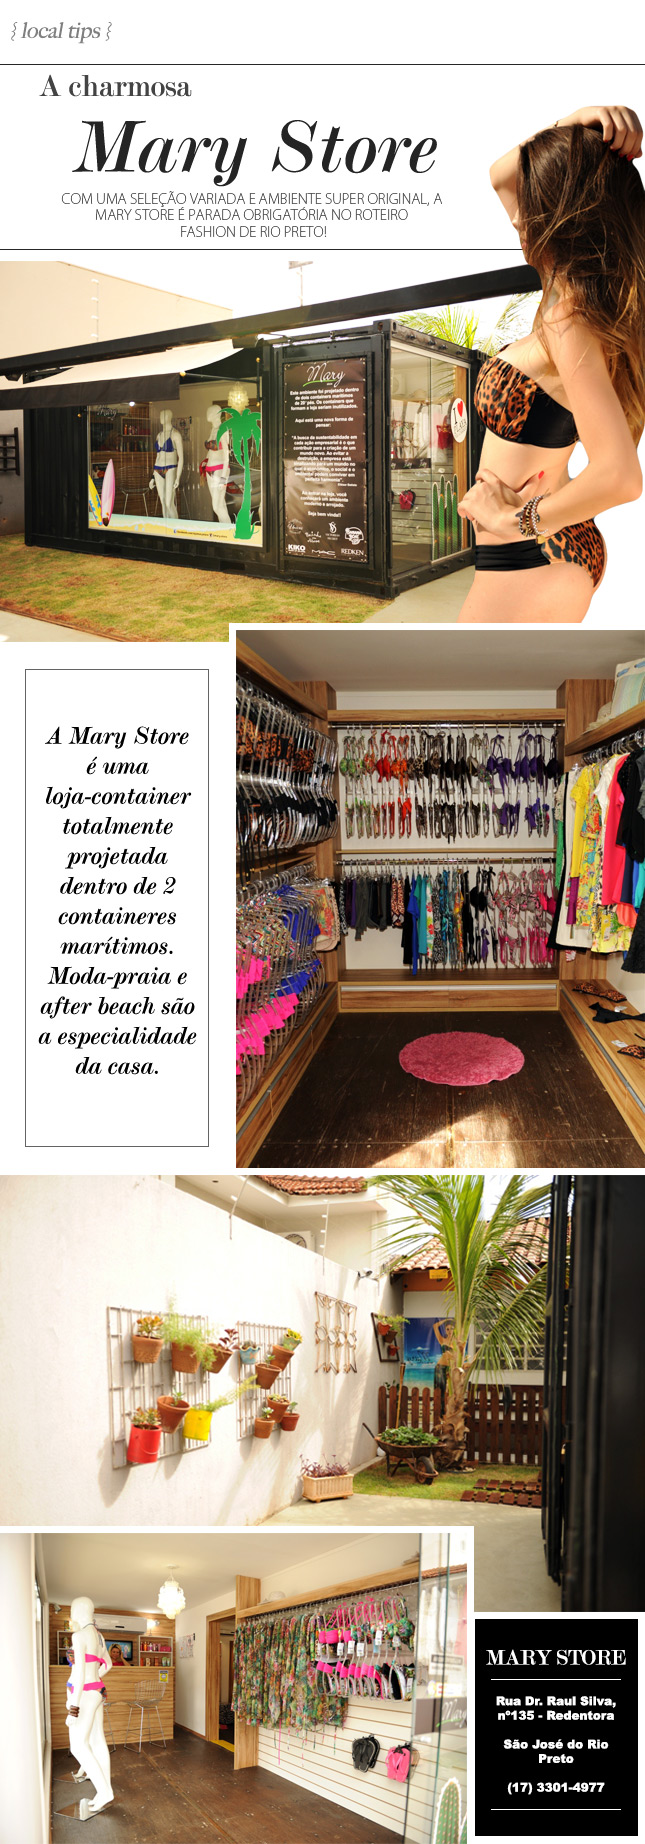 mary store rio preto blog de moda oh my closet monica araujo mary store biquinis verso 2015 moda praia after beach black friday